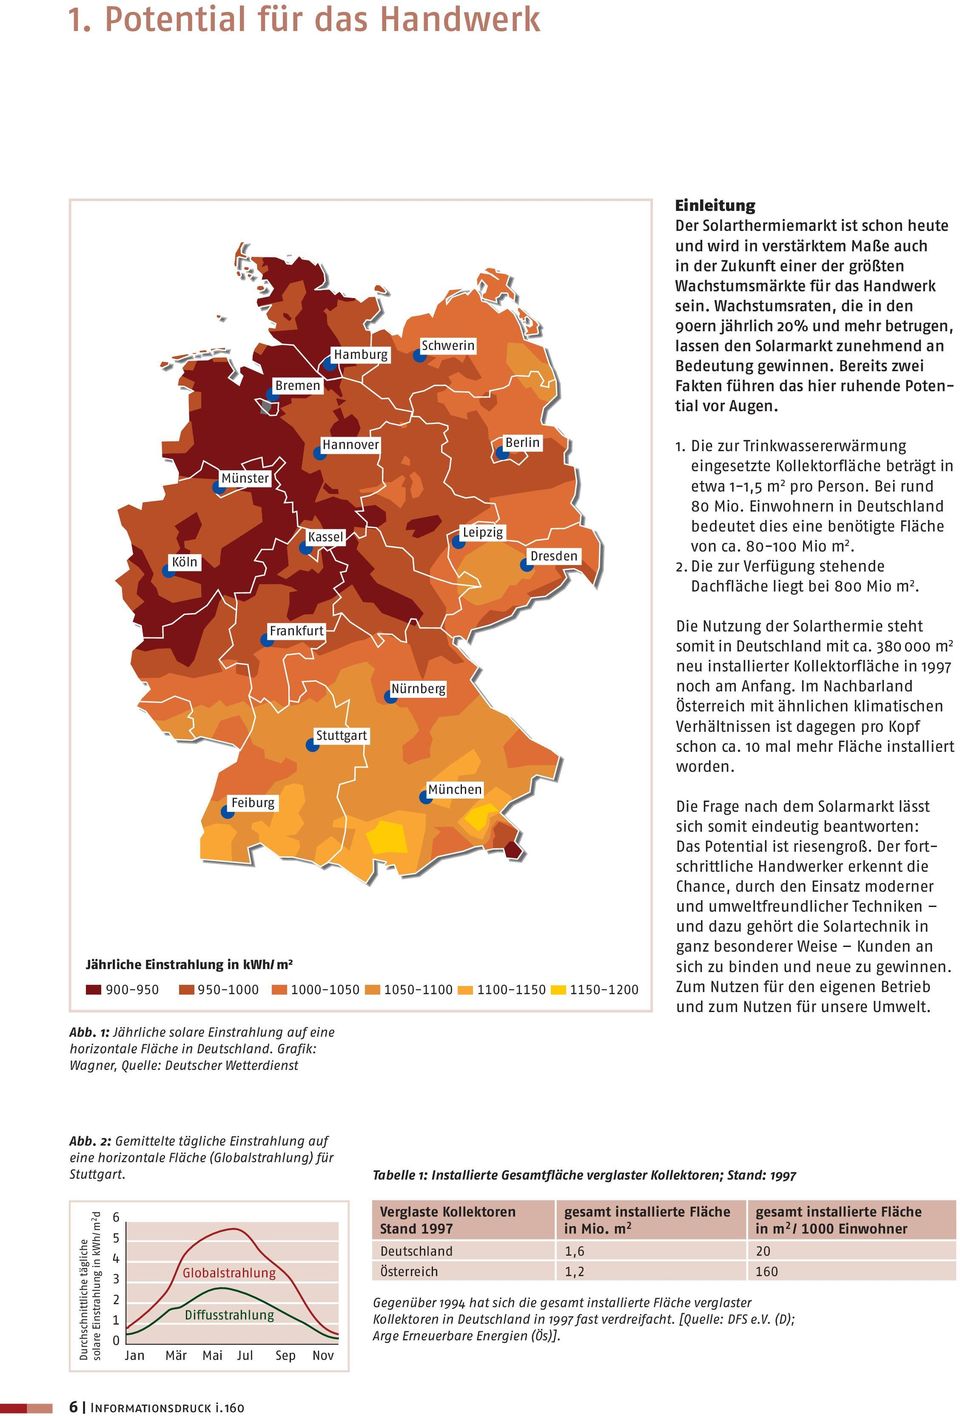 Köln Münster Hannover Kassel Leipzig Berlin Dresden 1. Die zur Trinkwassererwärmung eingesetzte Kollektorfläche beträgt in etwa 1-1,5 m 2 pro Person. Bei rund 80 Mio.